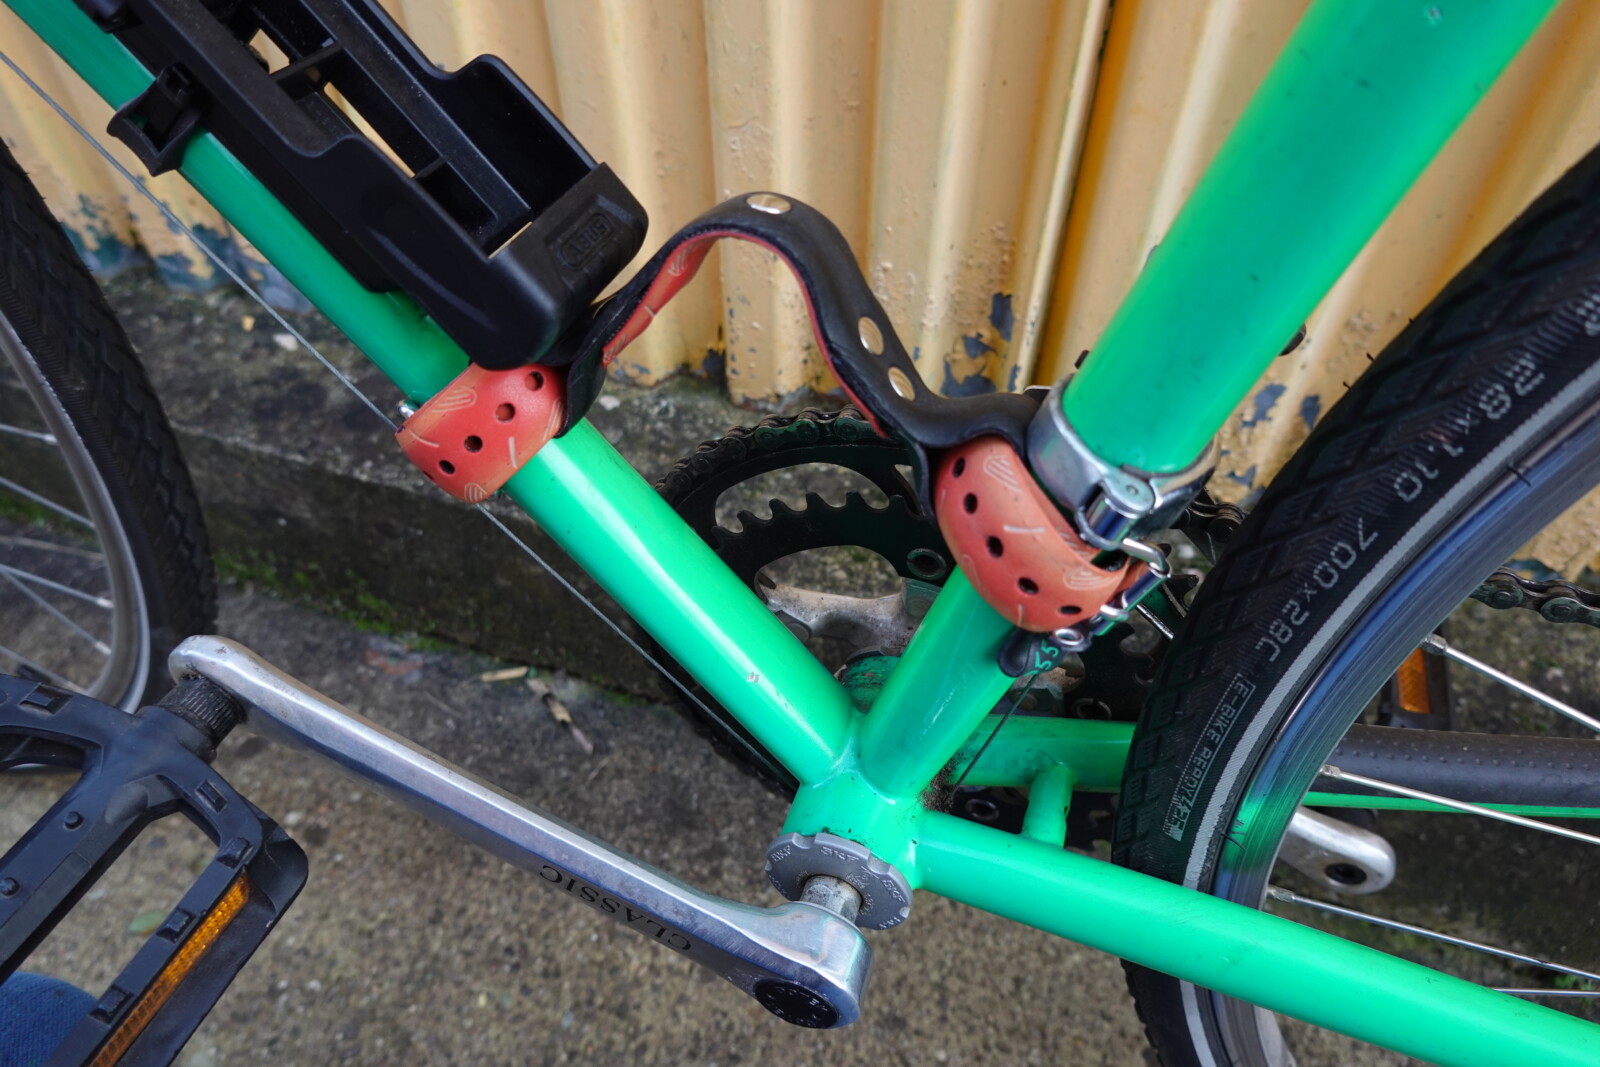 Poignée de transport pour vélo - en pneu upcyclé - P55